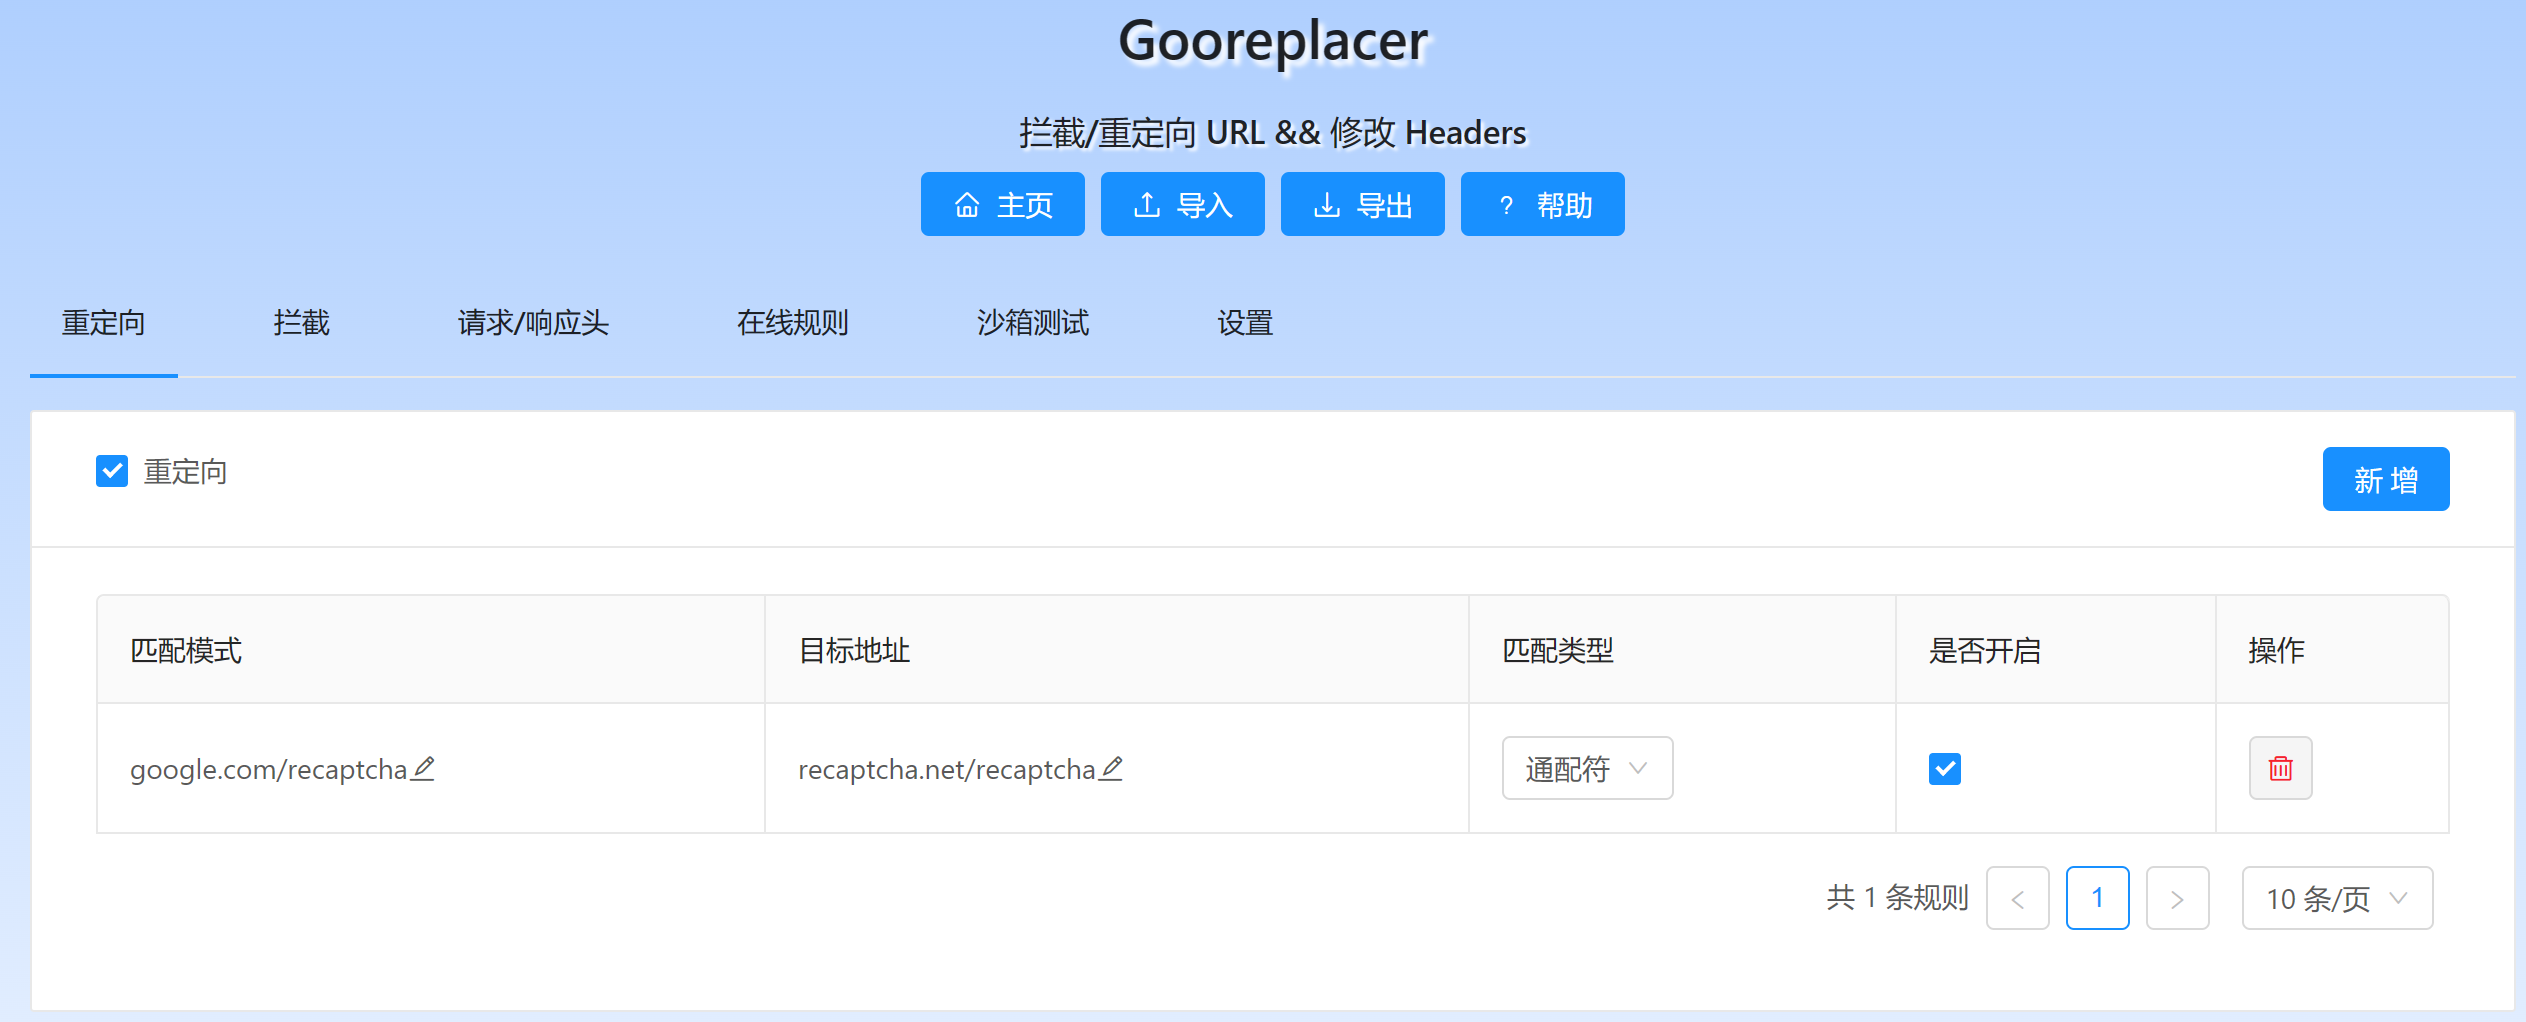 人机验证 reCaptcha 无法解锁 使用 Gooreplacer 的解决方案